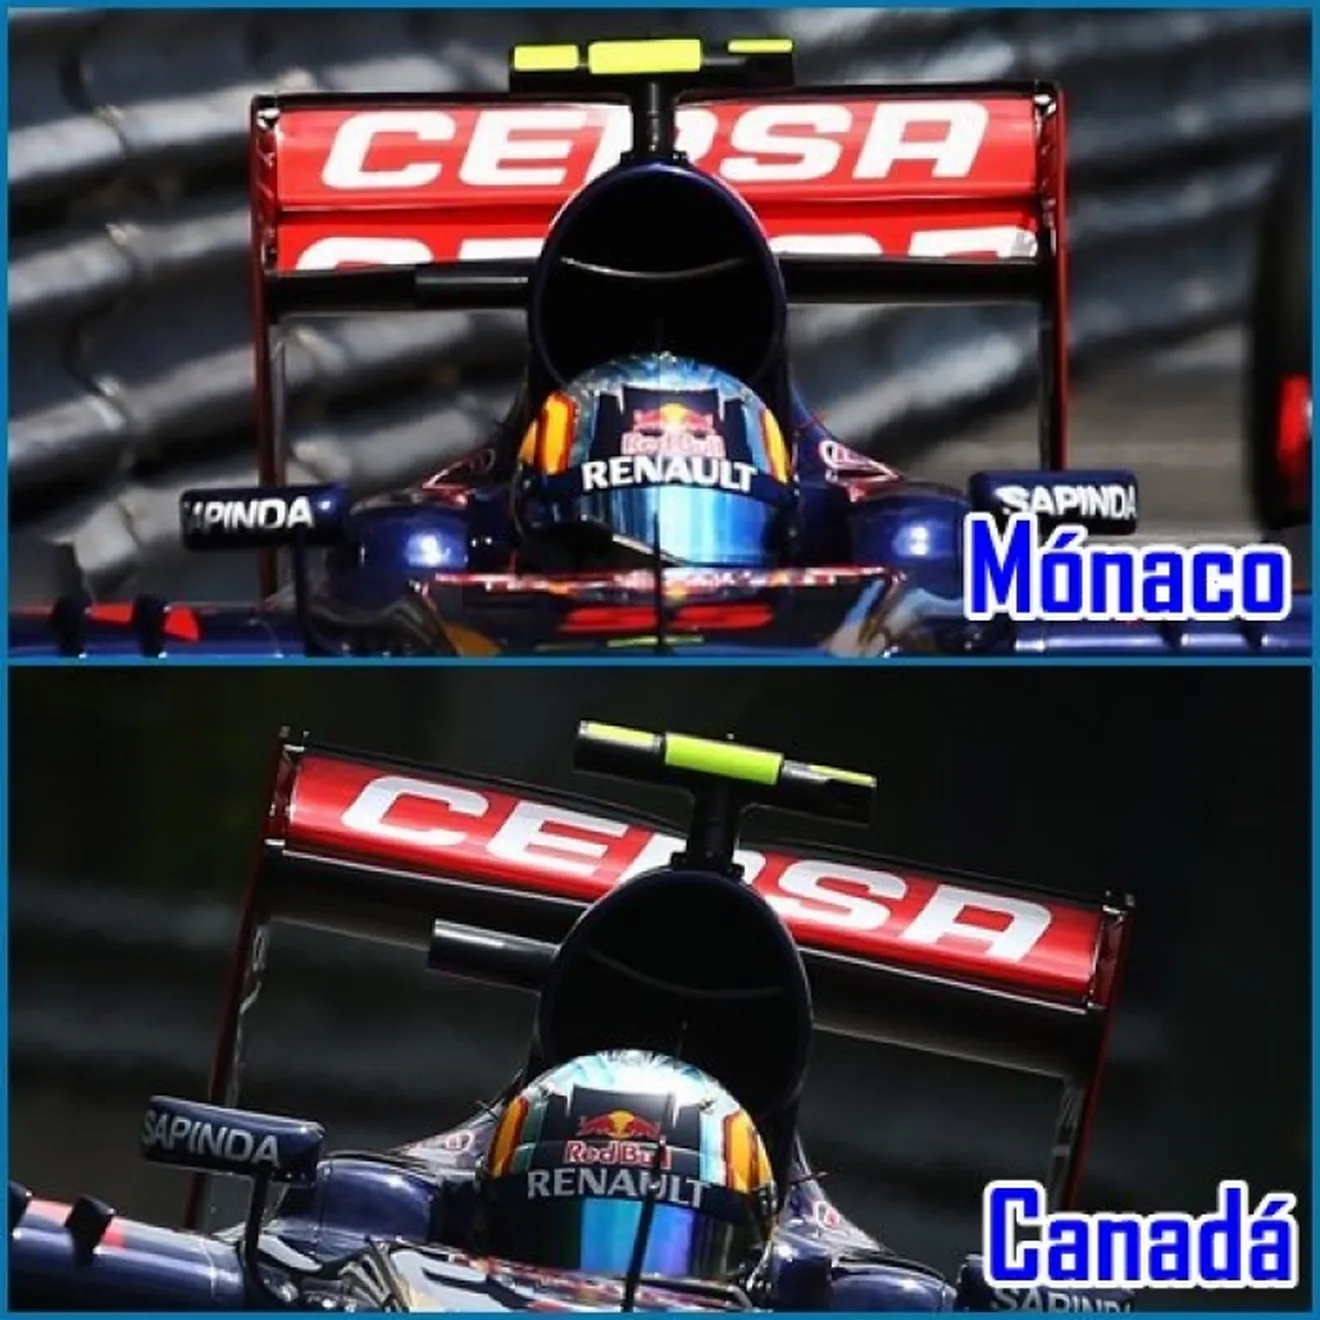 Los detalles técnicos del GP de Canadá